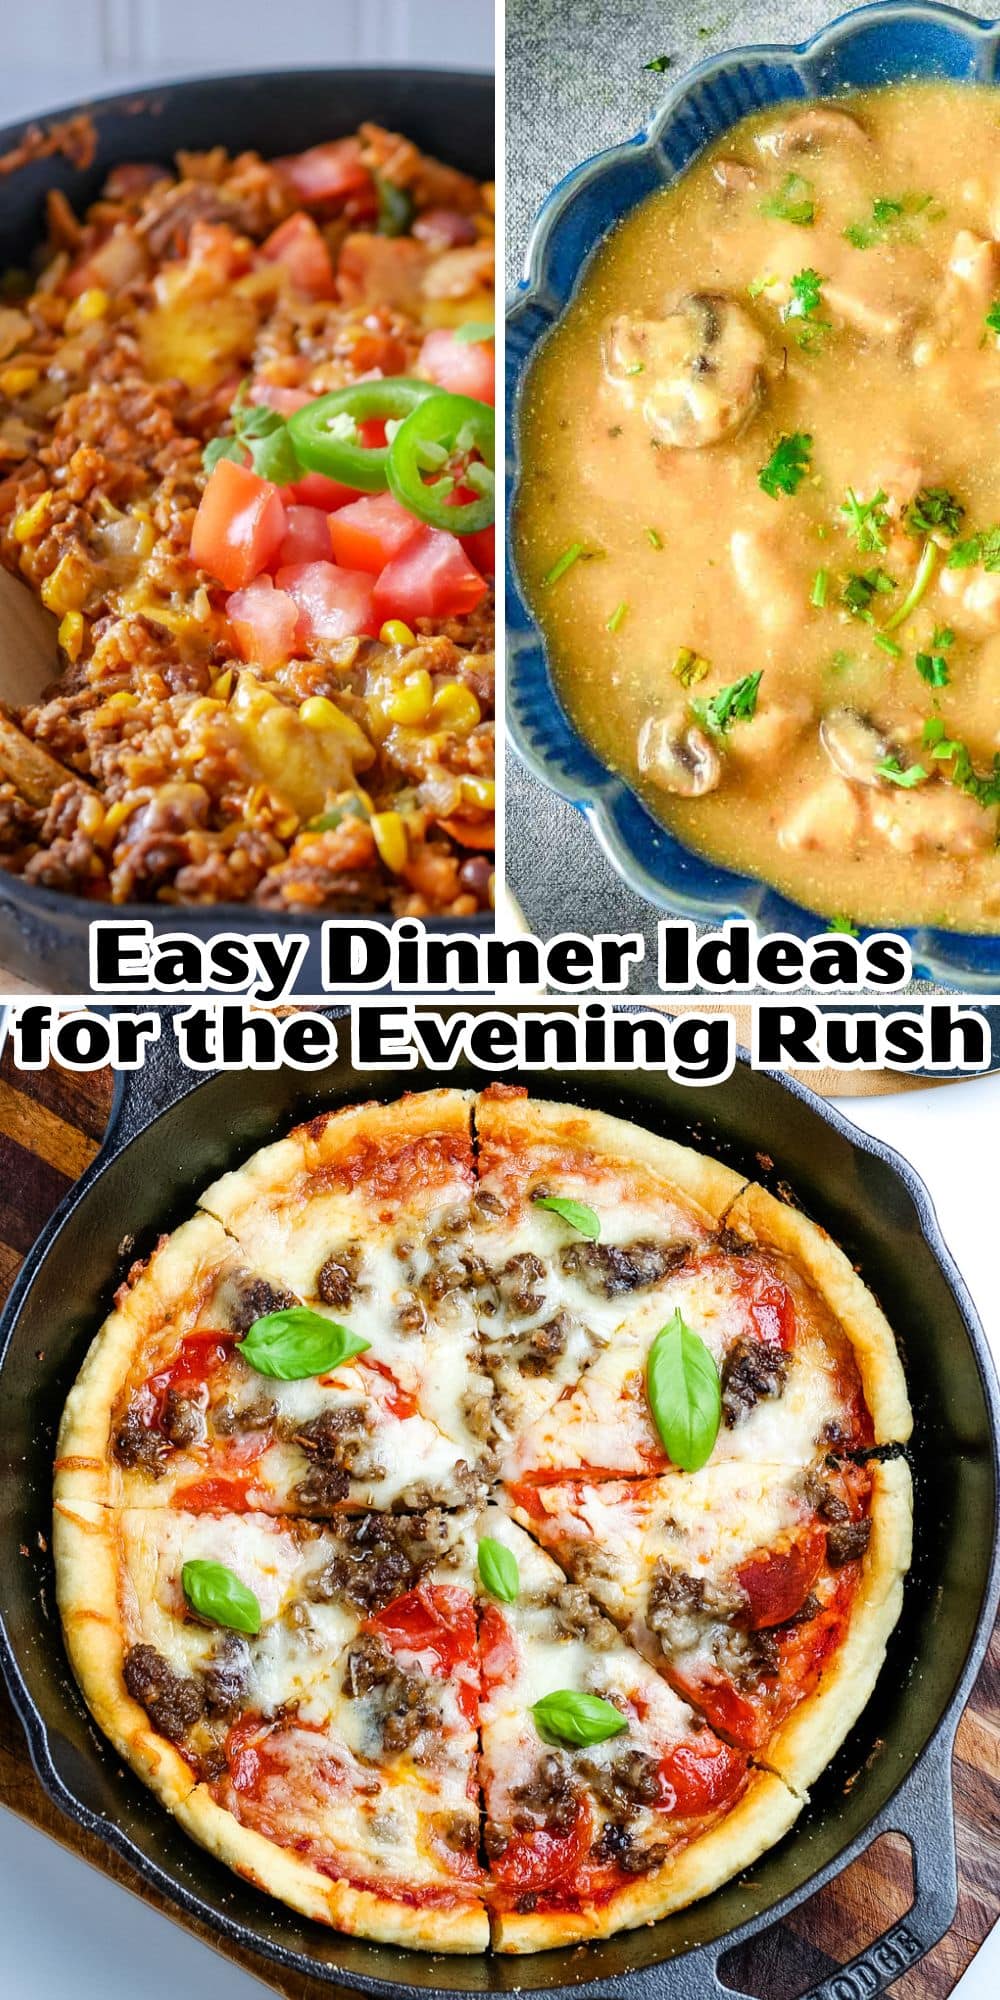 Easy dinner ideas for the evening rush.